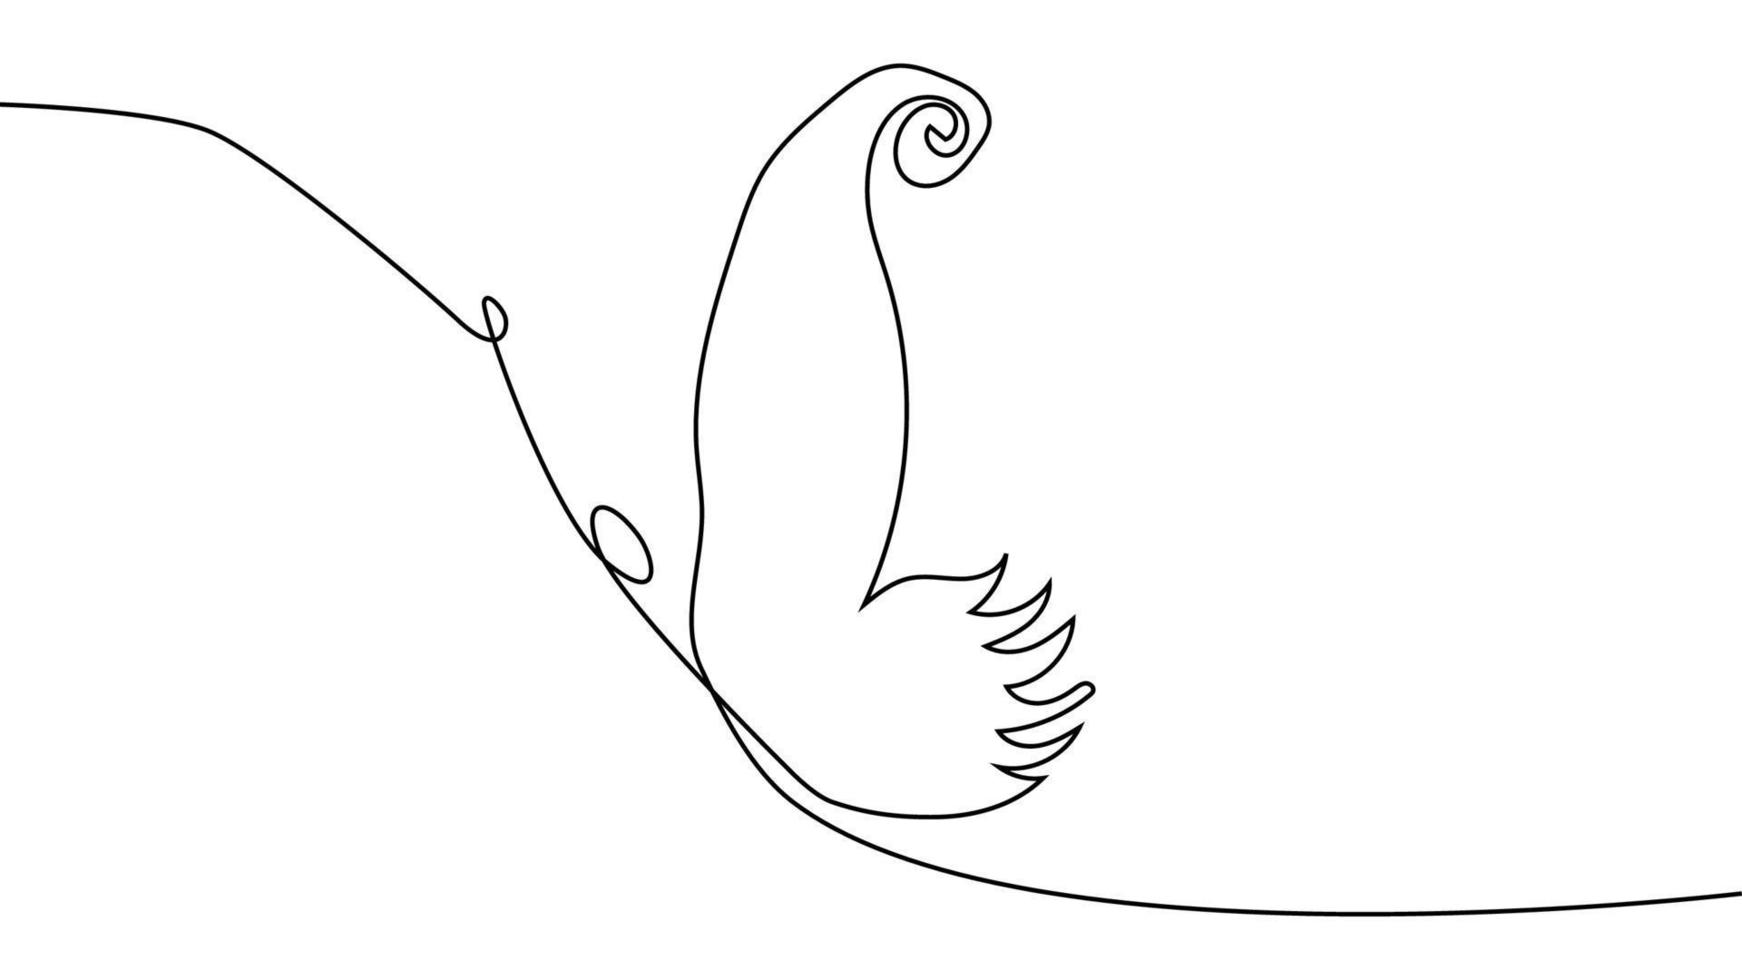 doorlopend een lijn tekening. vliegend vlinder logo. zwart en wit illustratie. concept voor logo, kaart, banier vector